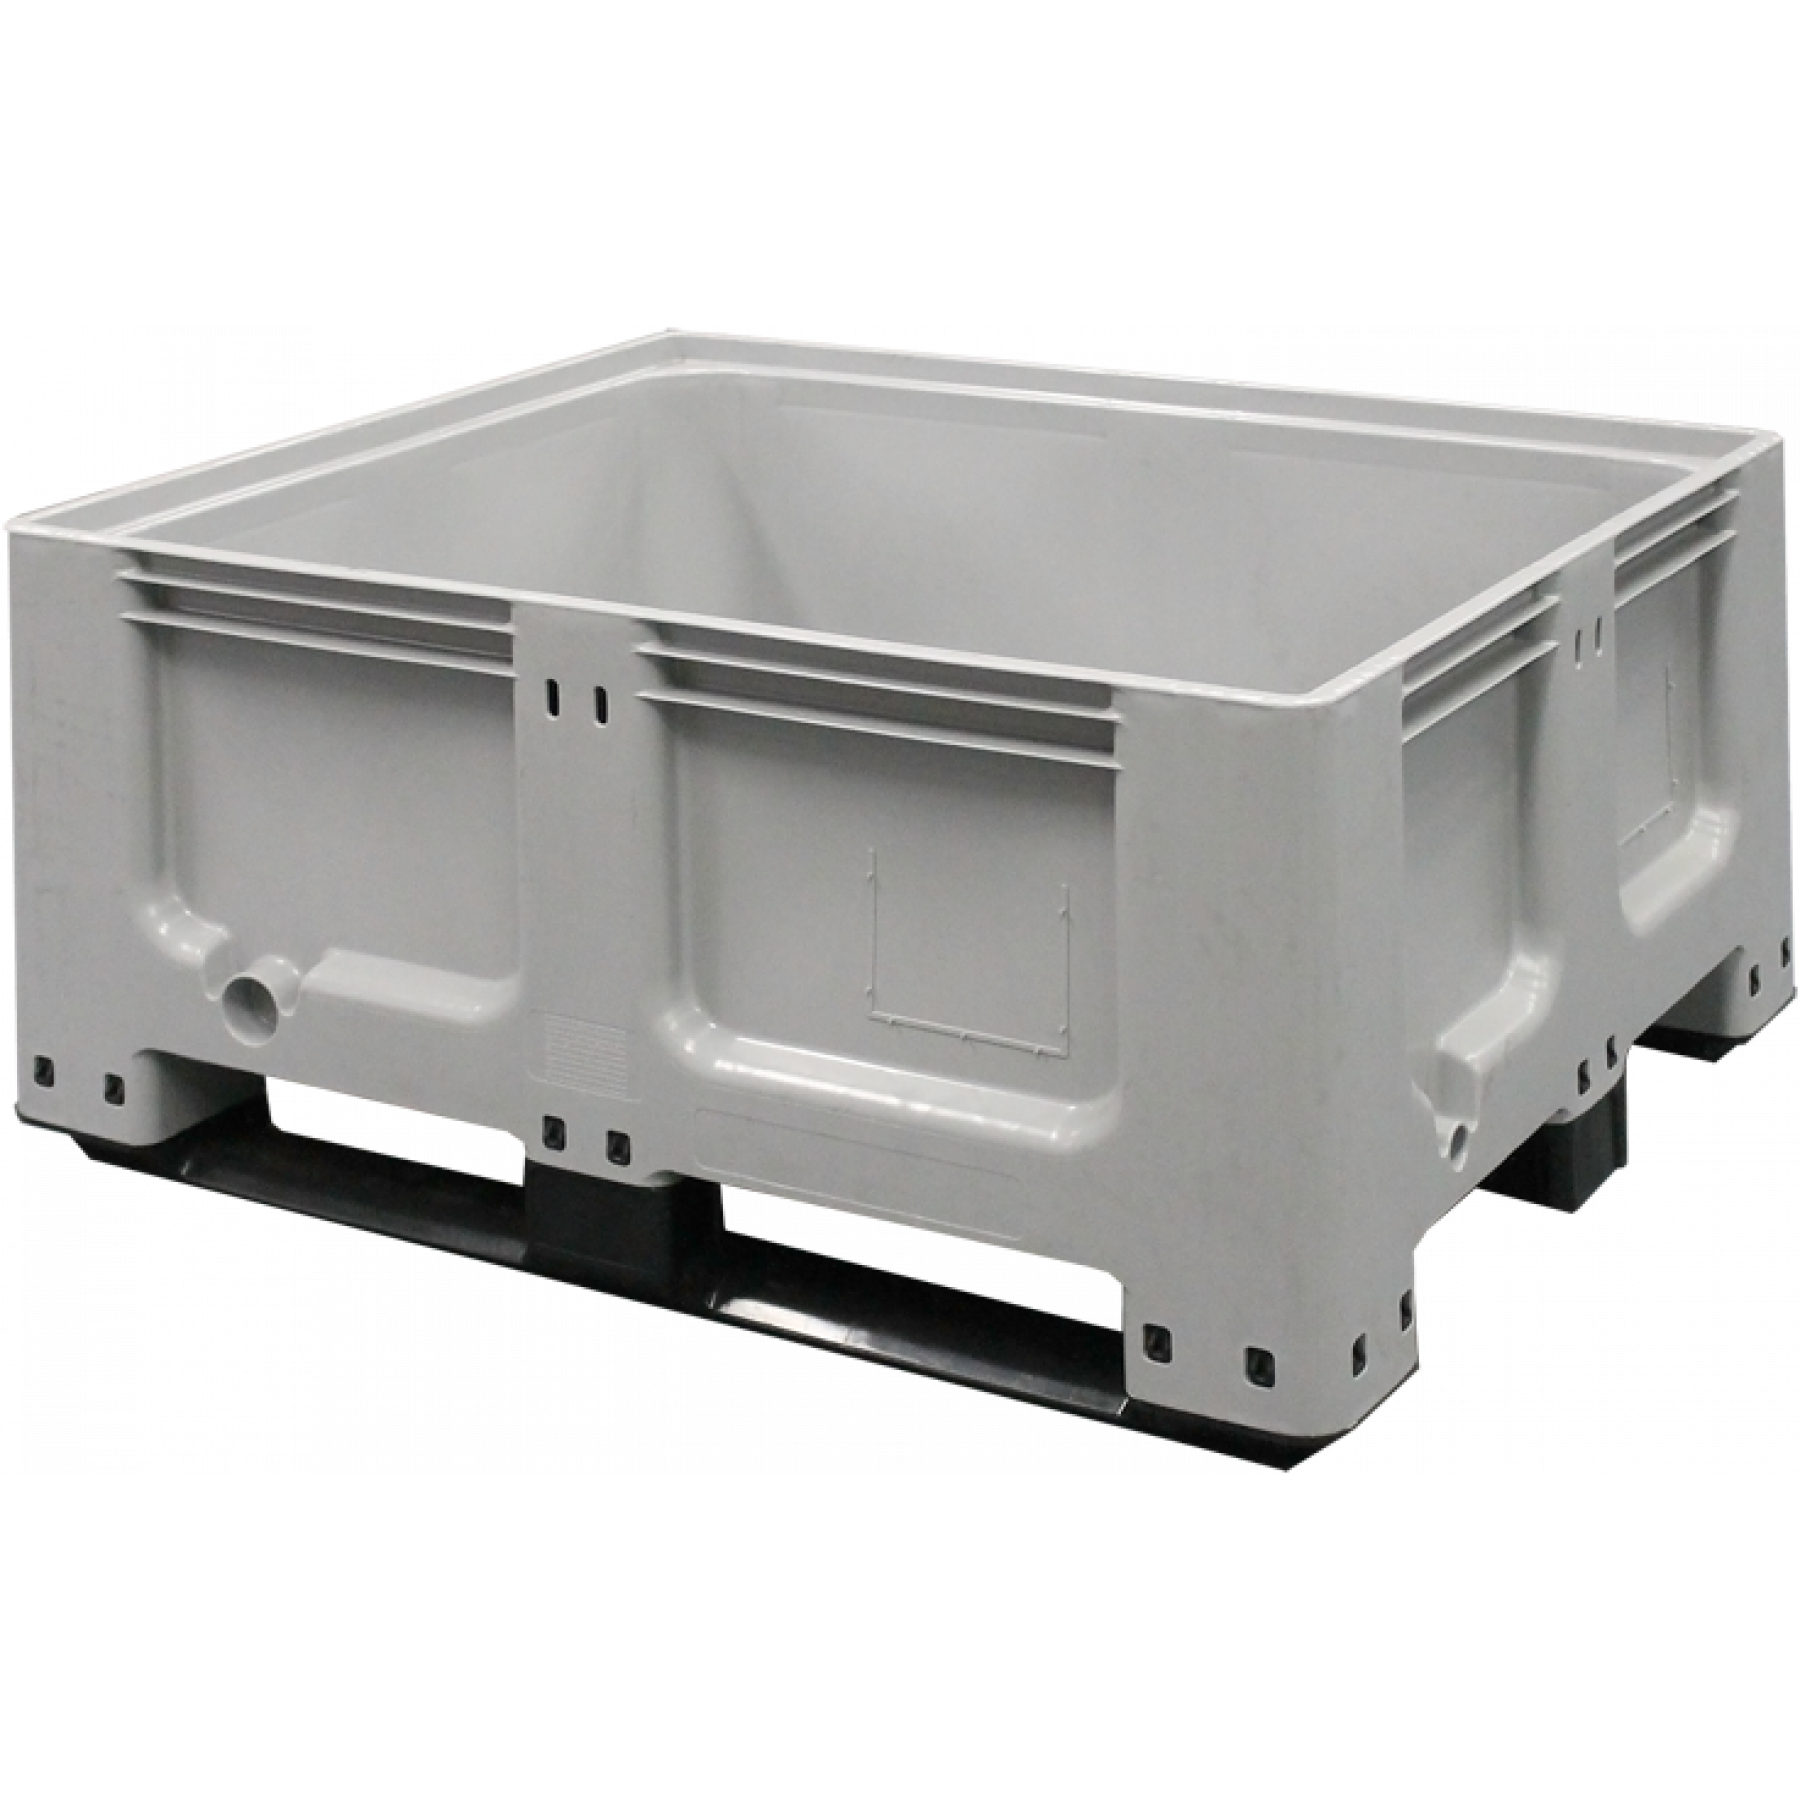 Tretal kunststof palletbox met sleeplatten 1200 x 1000 x 580 mm, 70092-S29-06-0032-70